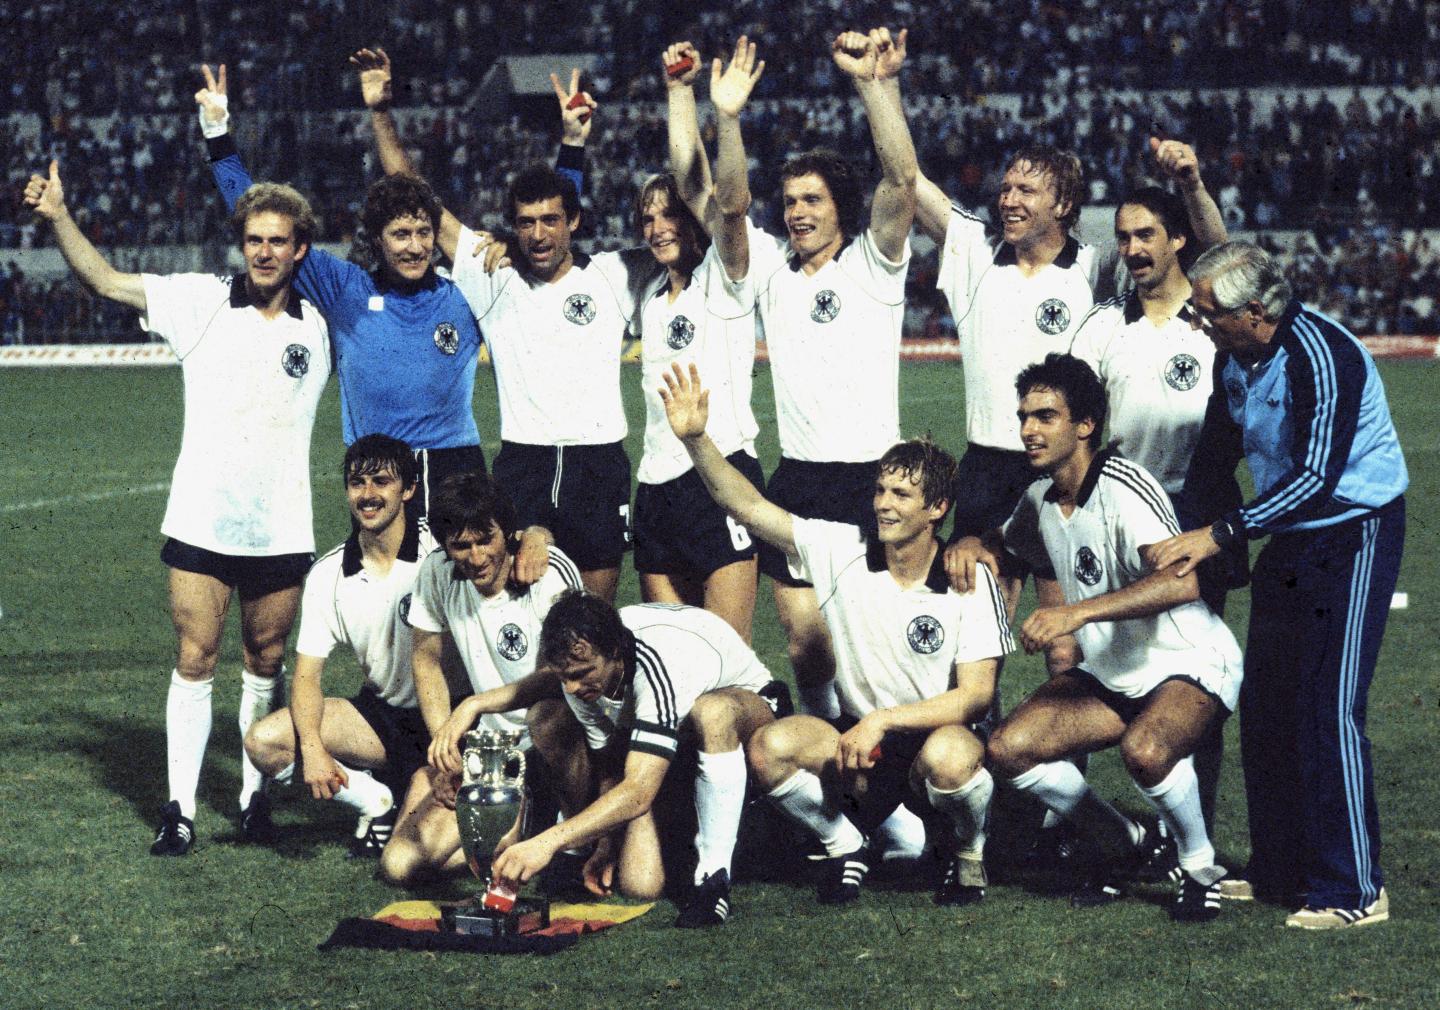 RFN - Belgia 2:1 (22.06.1980)